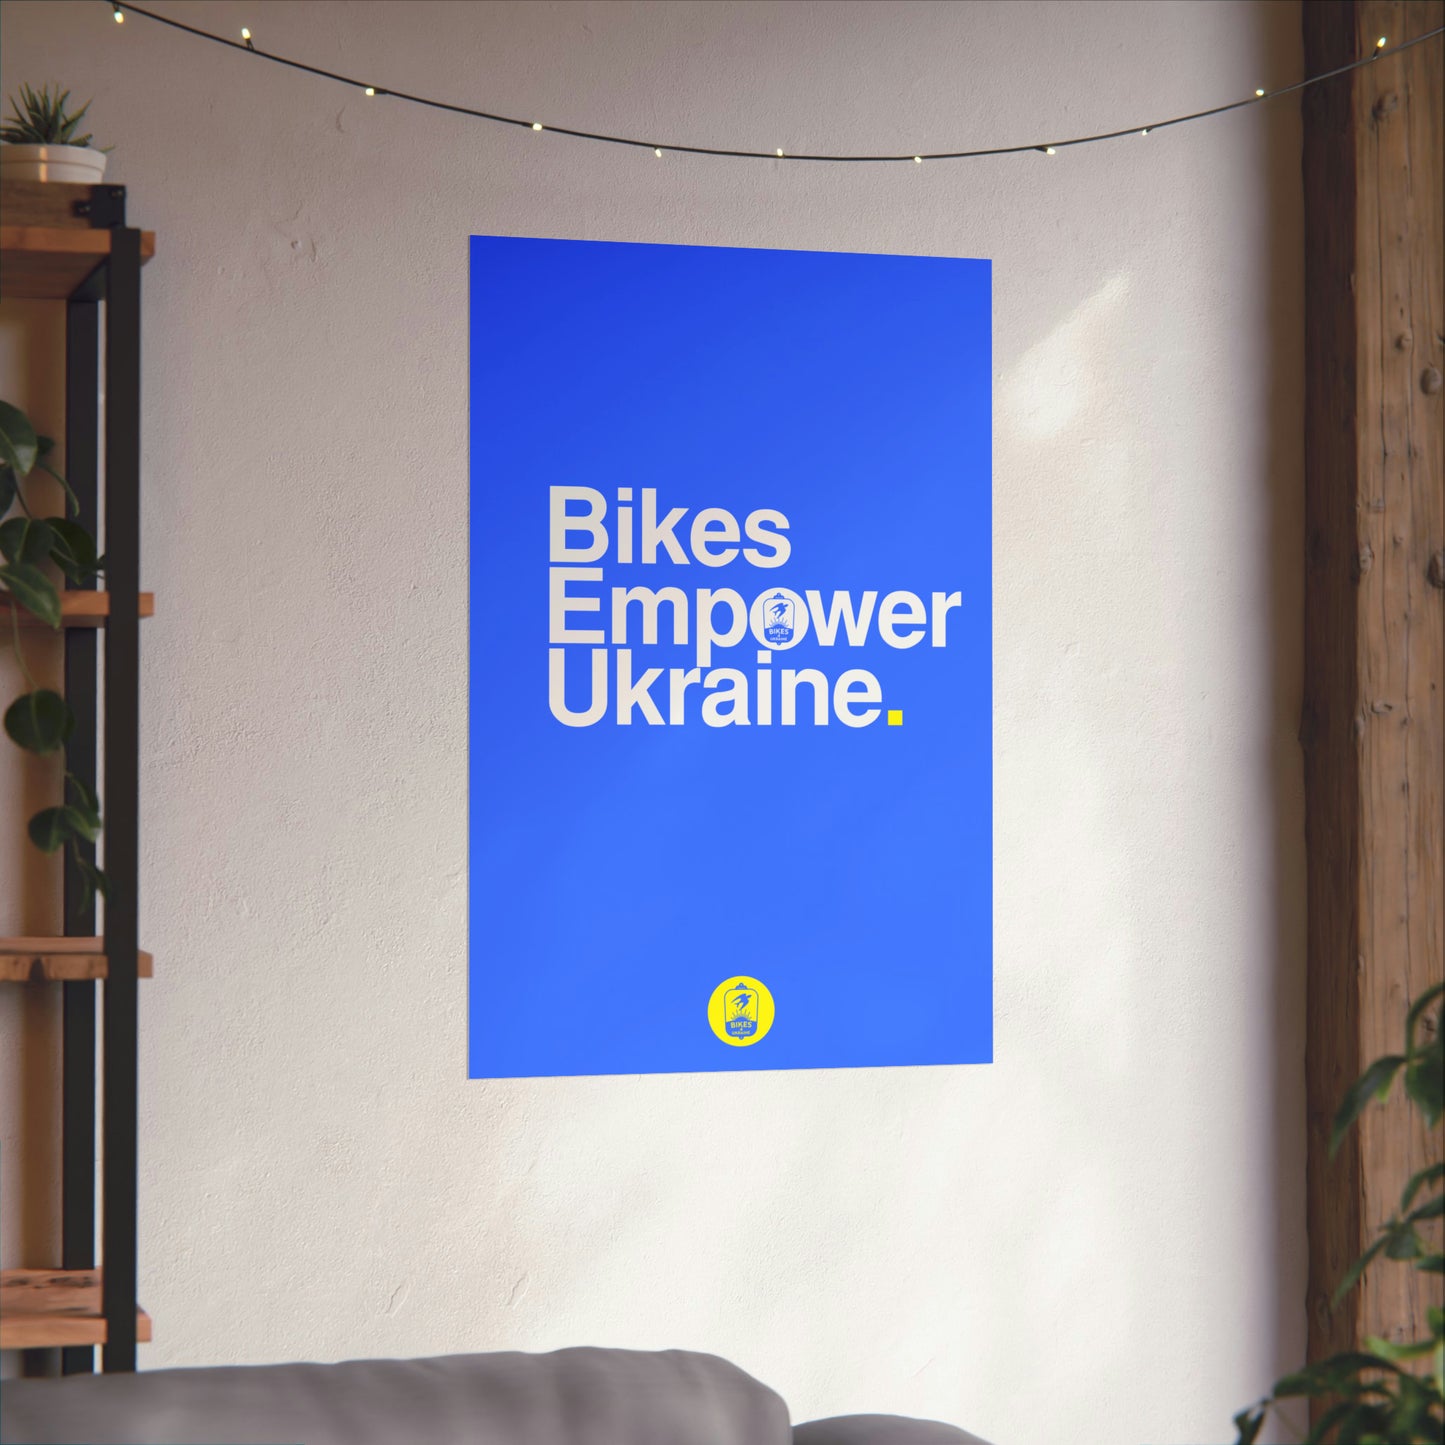 Bikes Empower Ukraine - Poster from Bikes4Ukraine.org